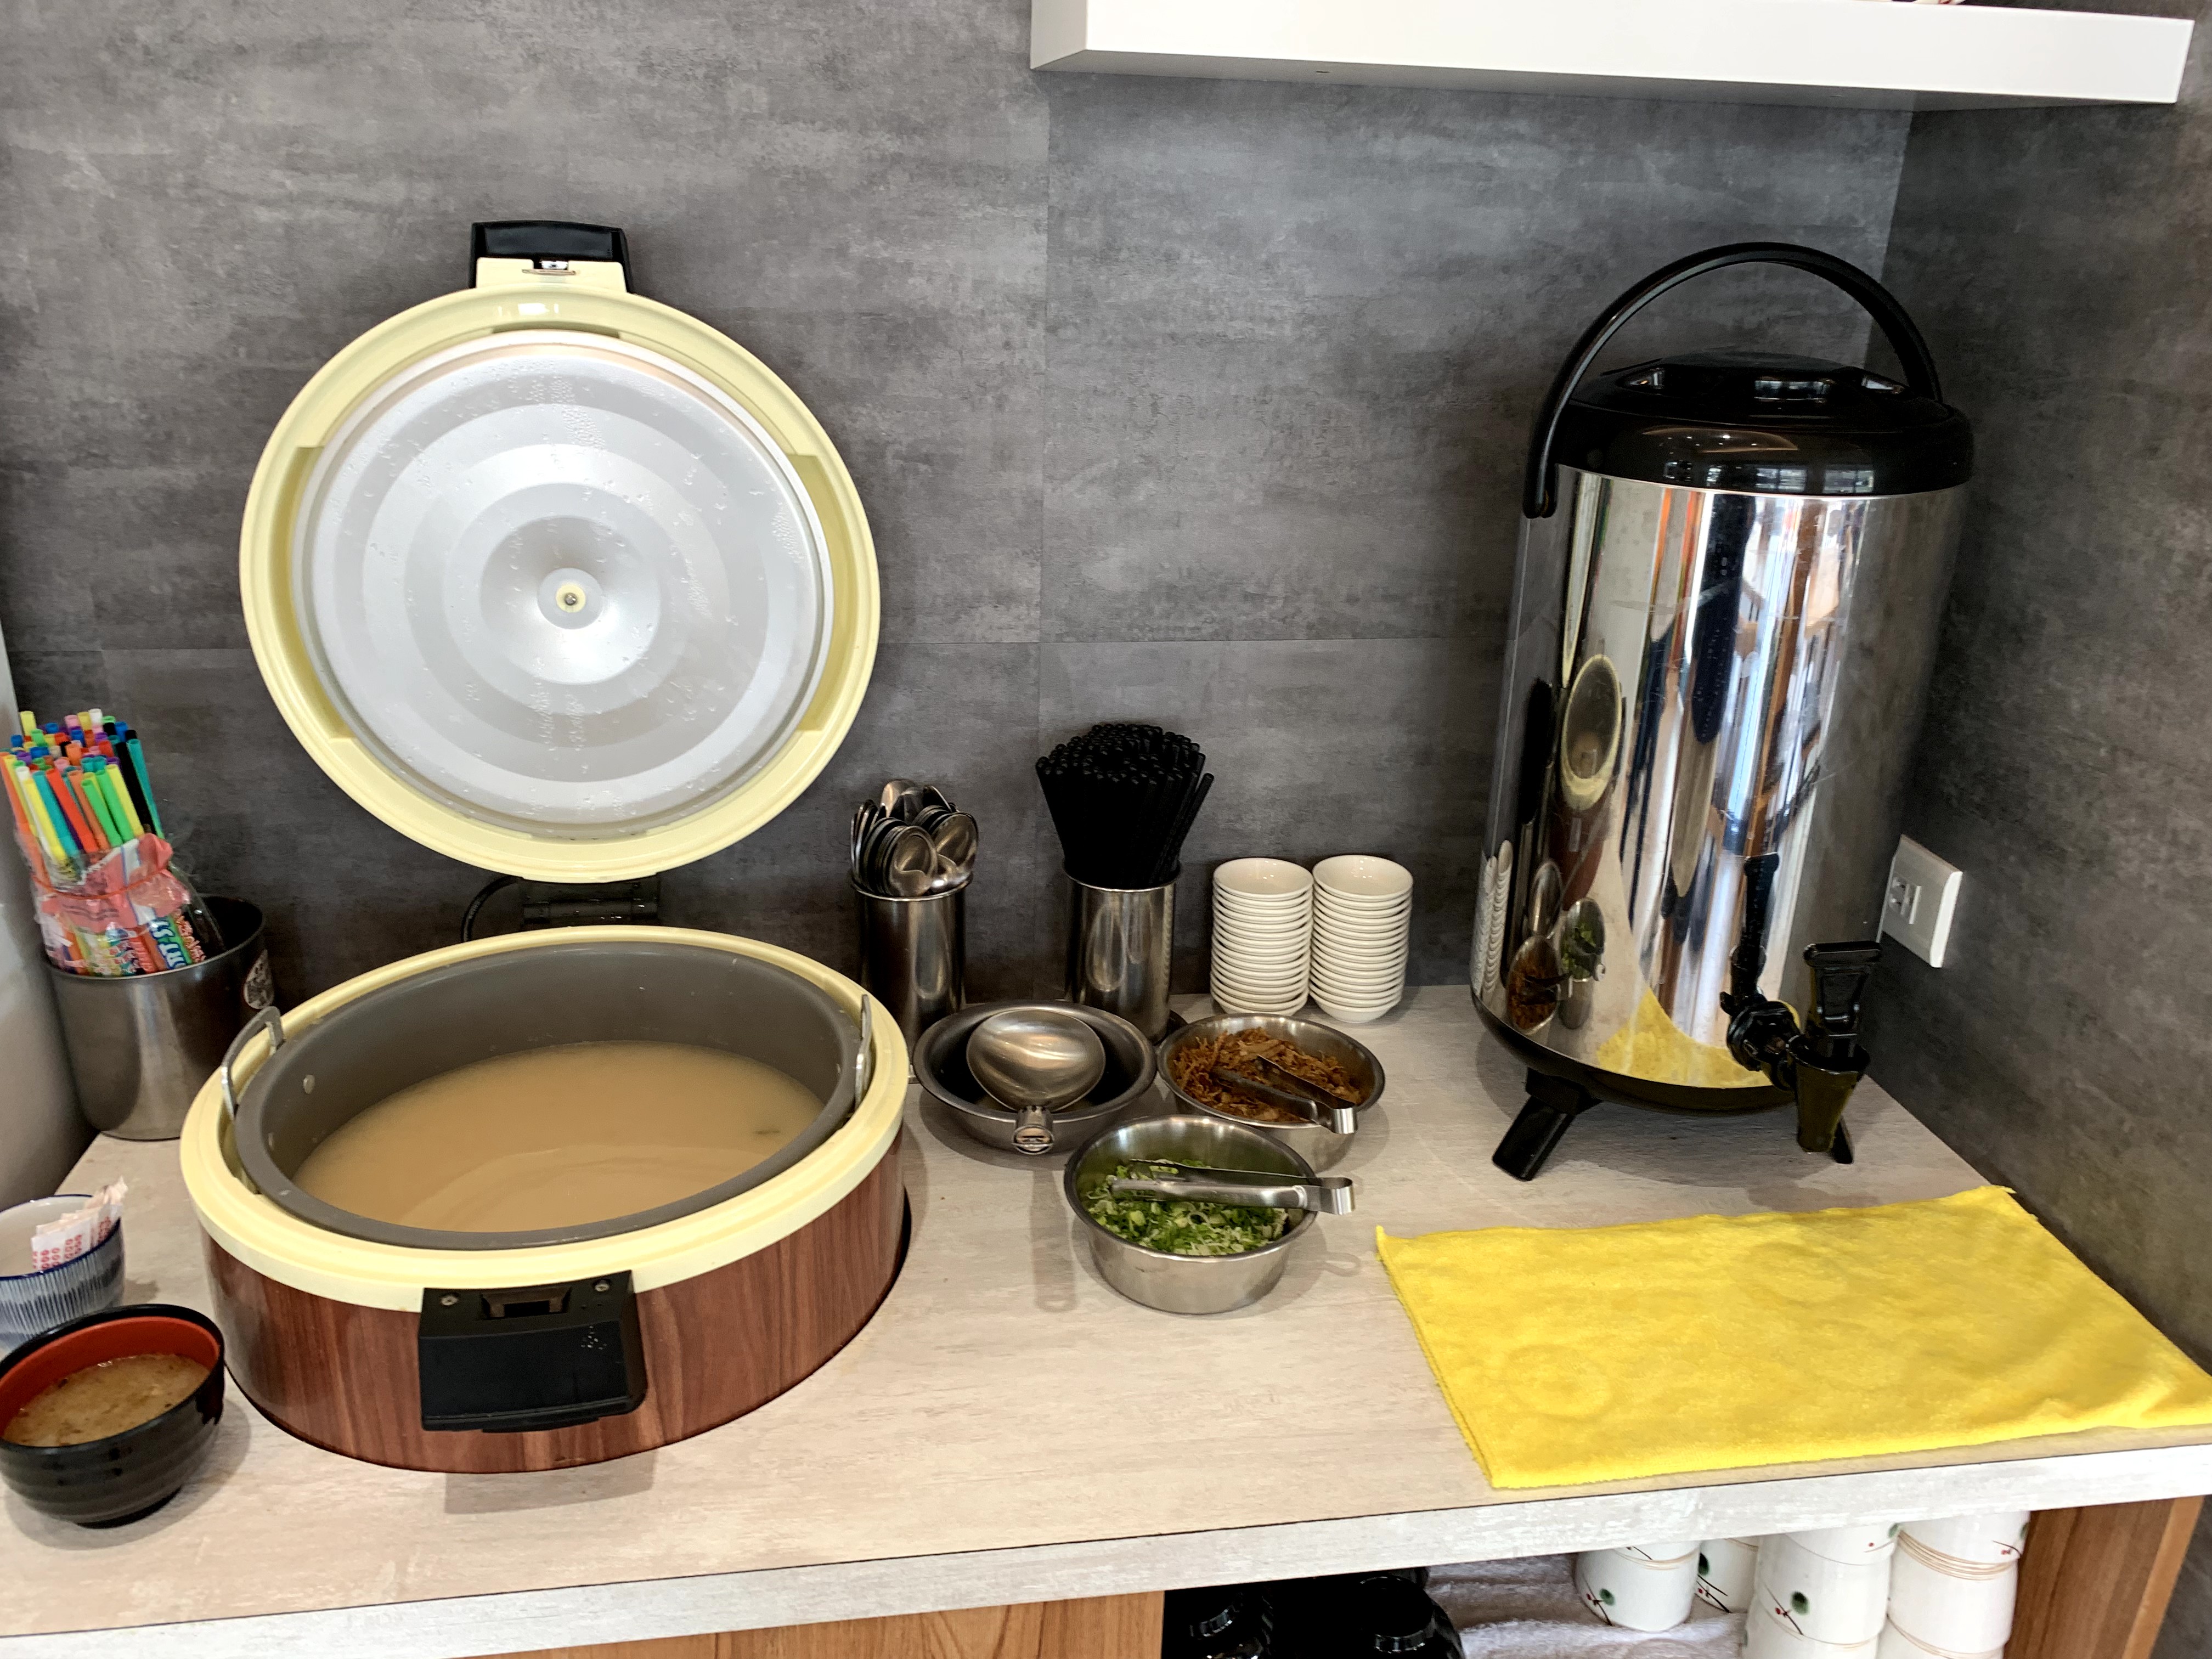 味噌湯、茶及餐具自助區